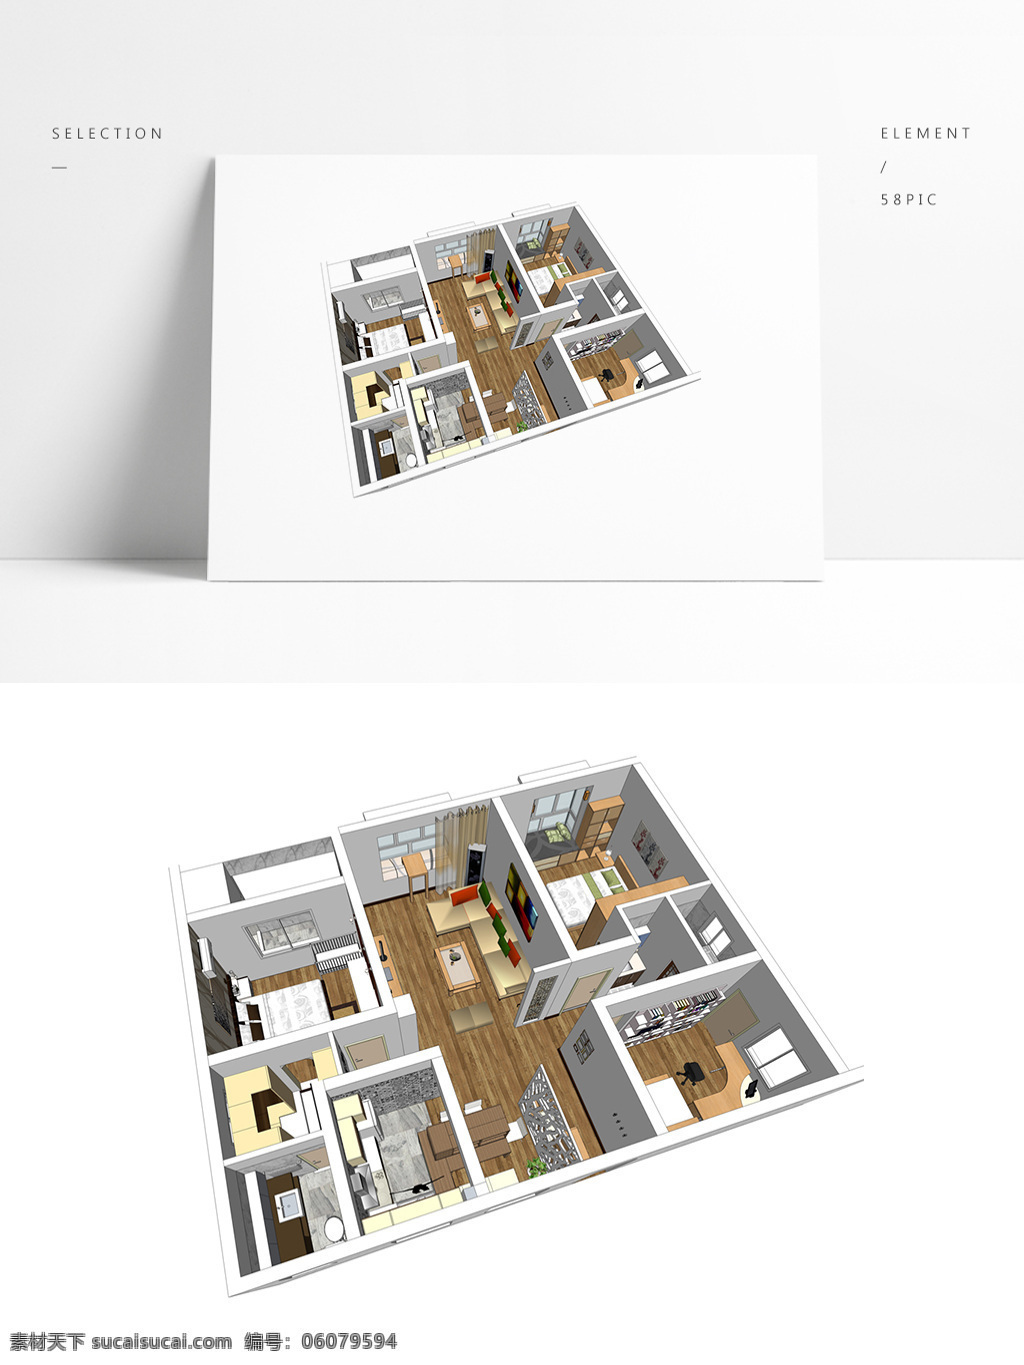 三居室 户型 su 透视 模型 室内空间设计 住宅室内设计 样板房 3d模型 su模型 草图大师模型 家具模型 透视模型